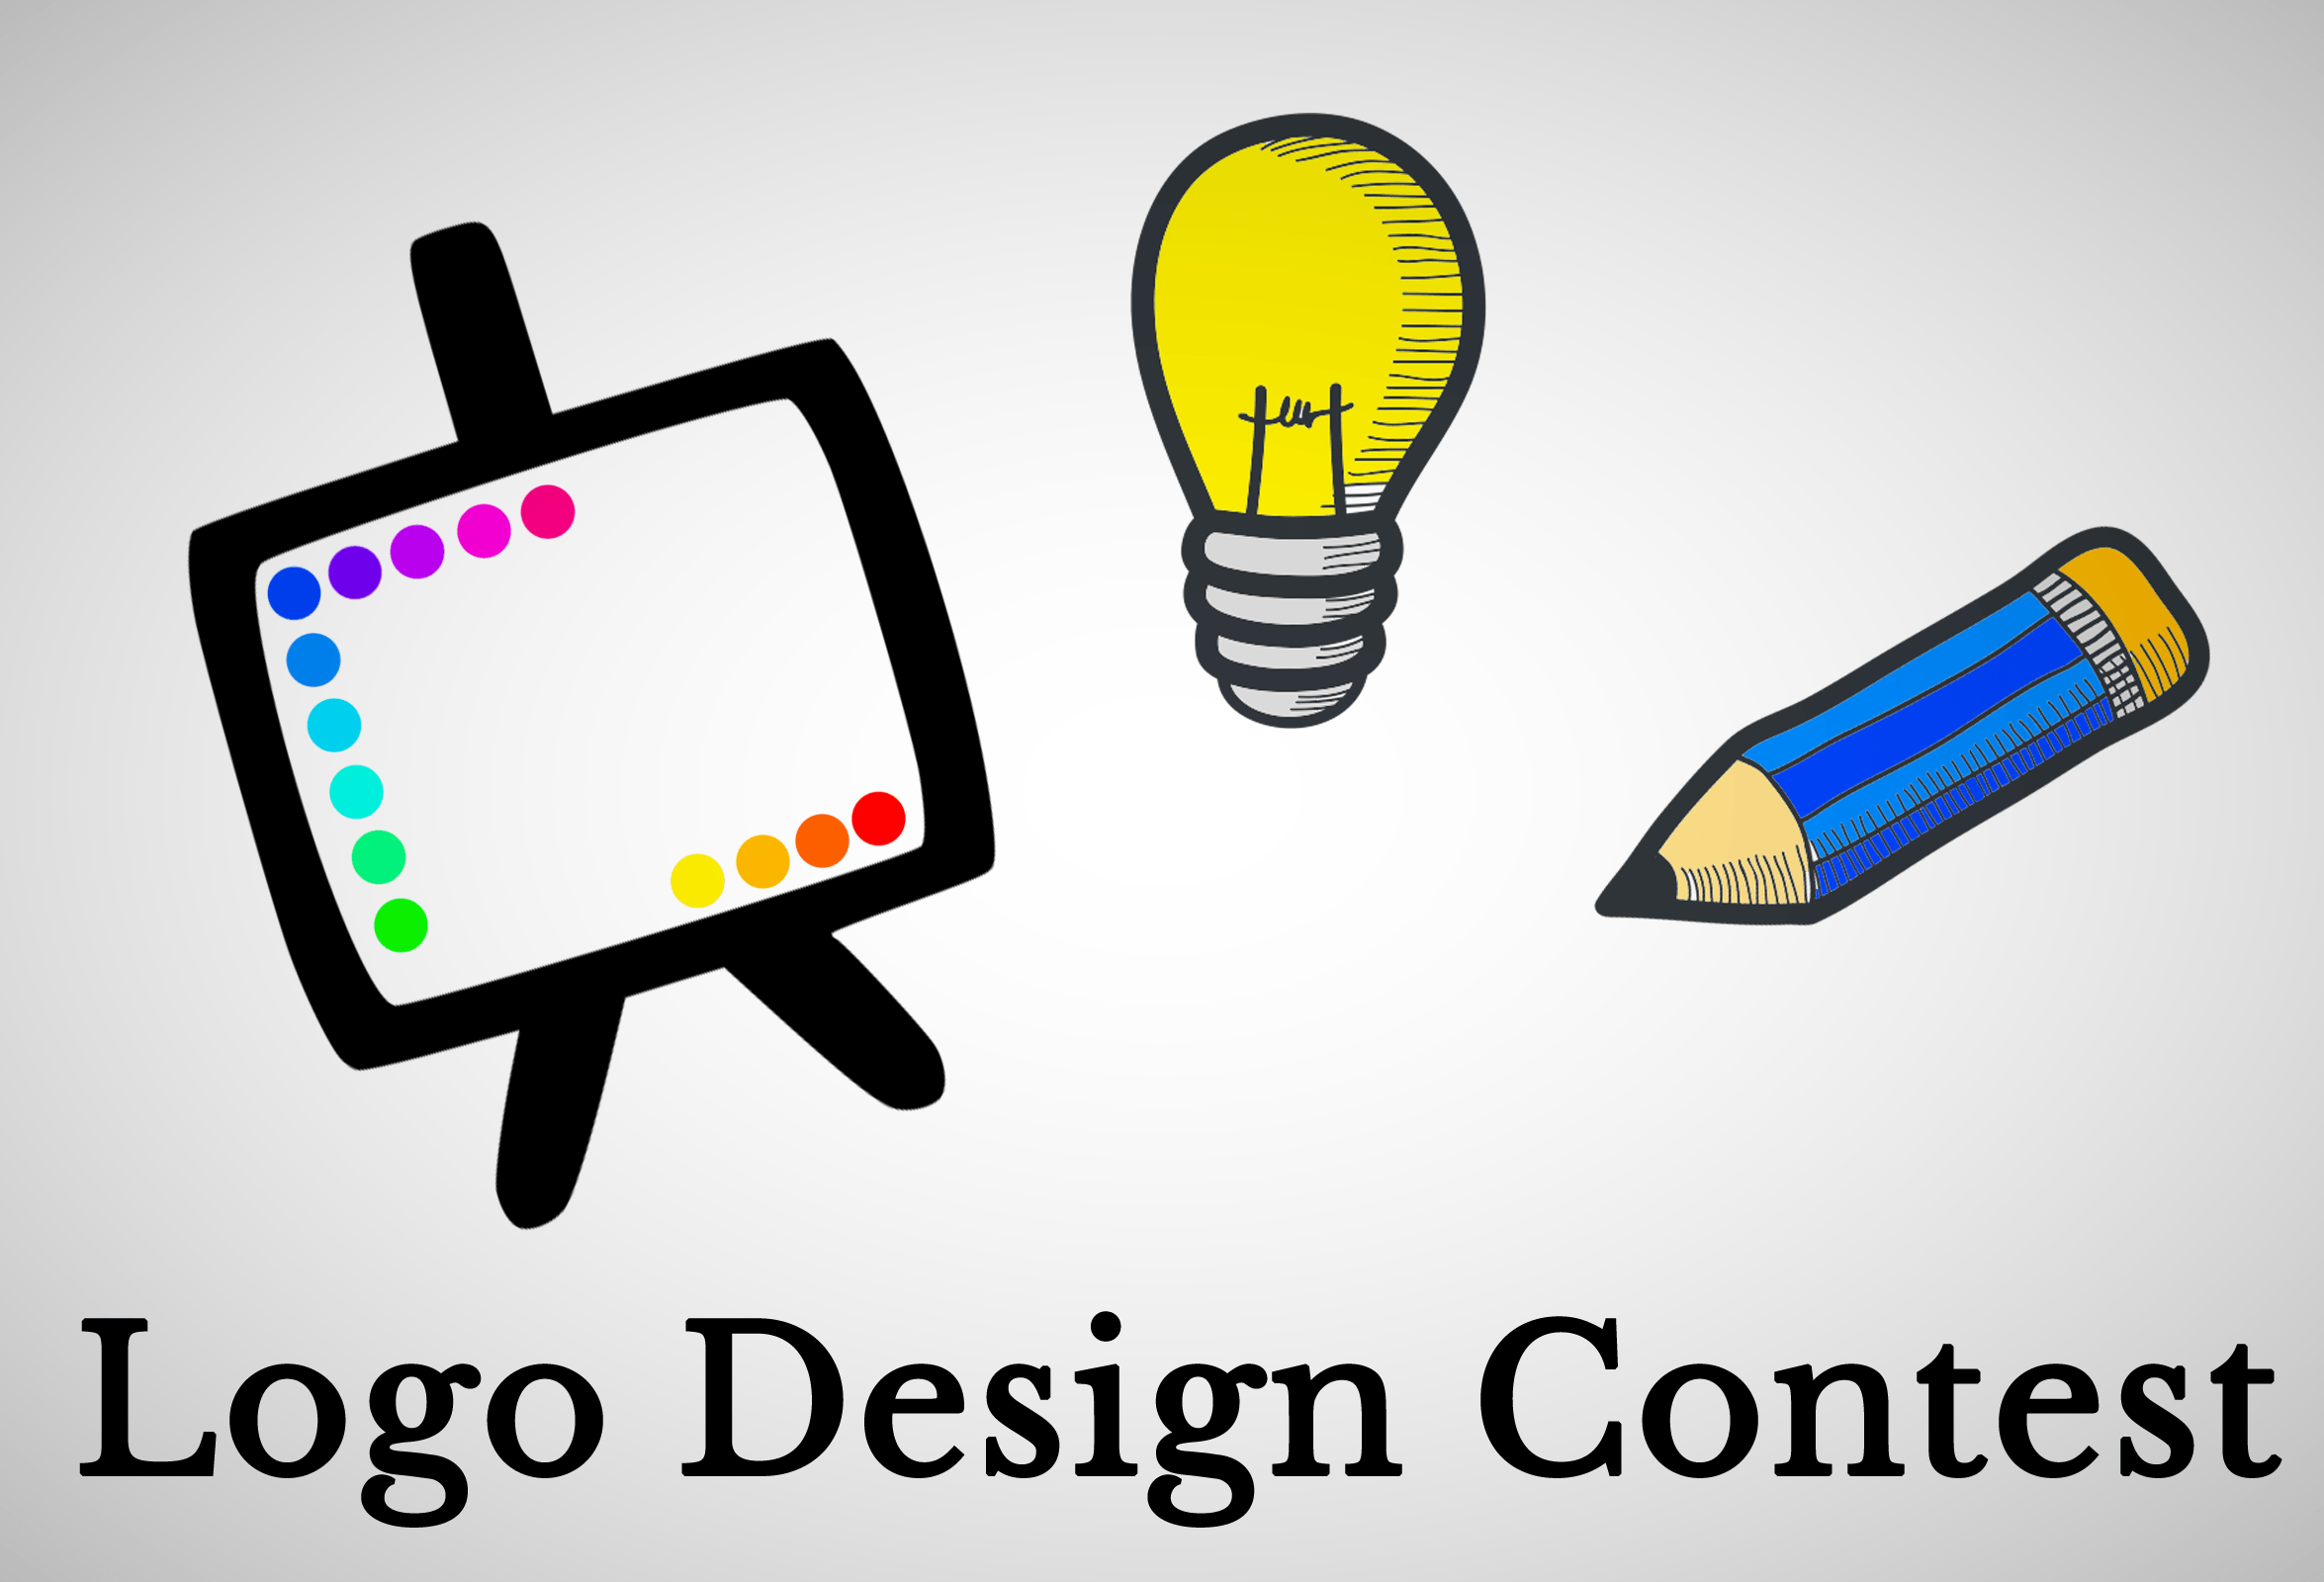 Contest Logo - Logo Design Contest